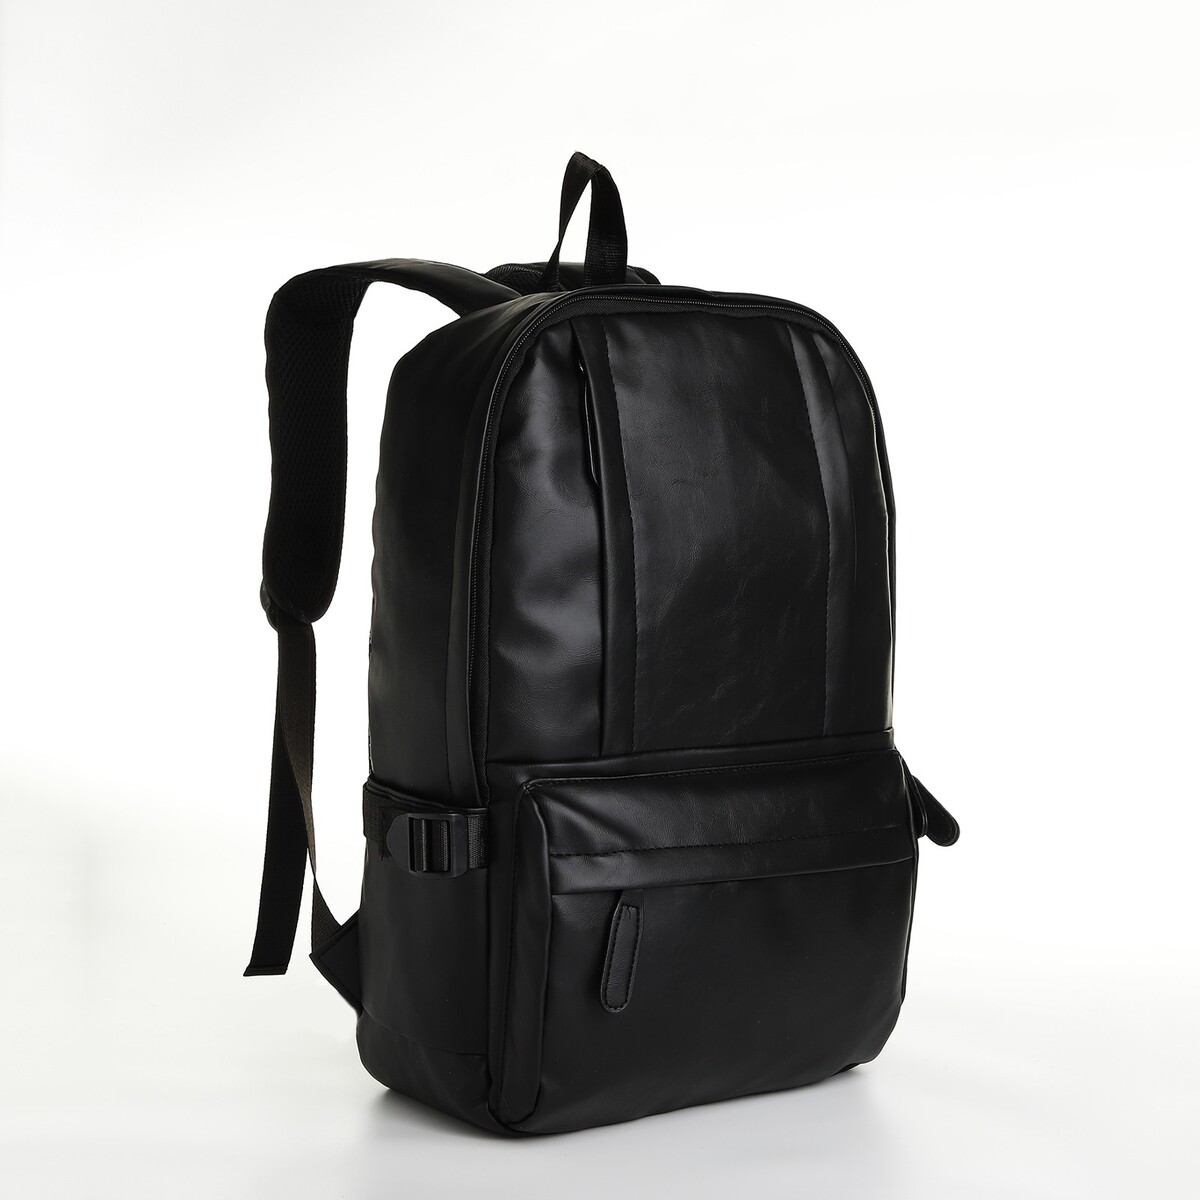 Рюкзак городской из искусственной кожи на молнии, 5 карманов, цвет черный